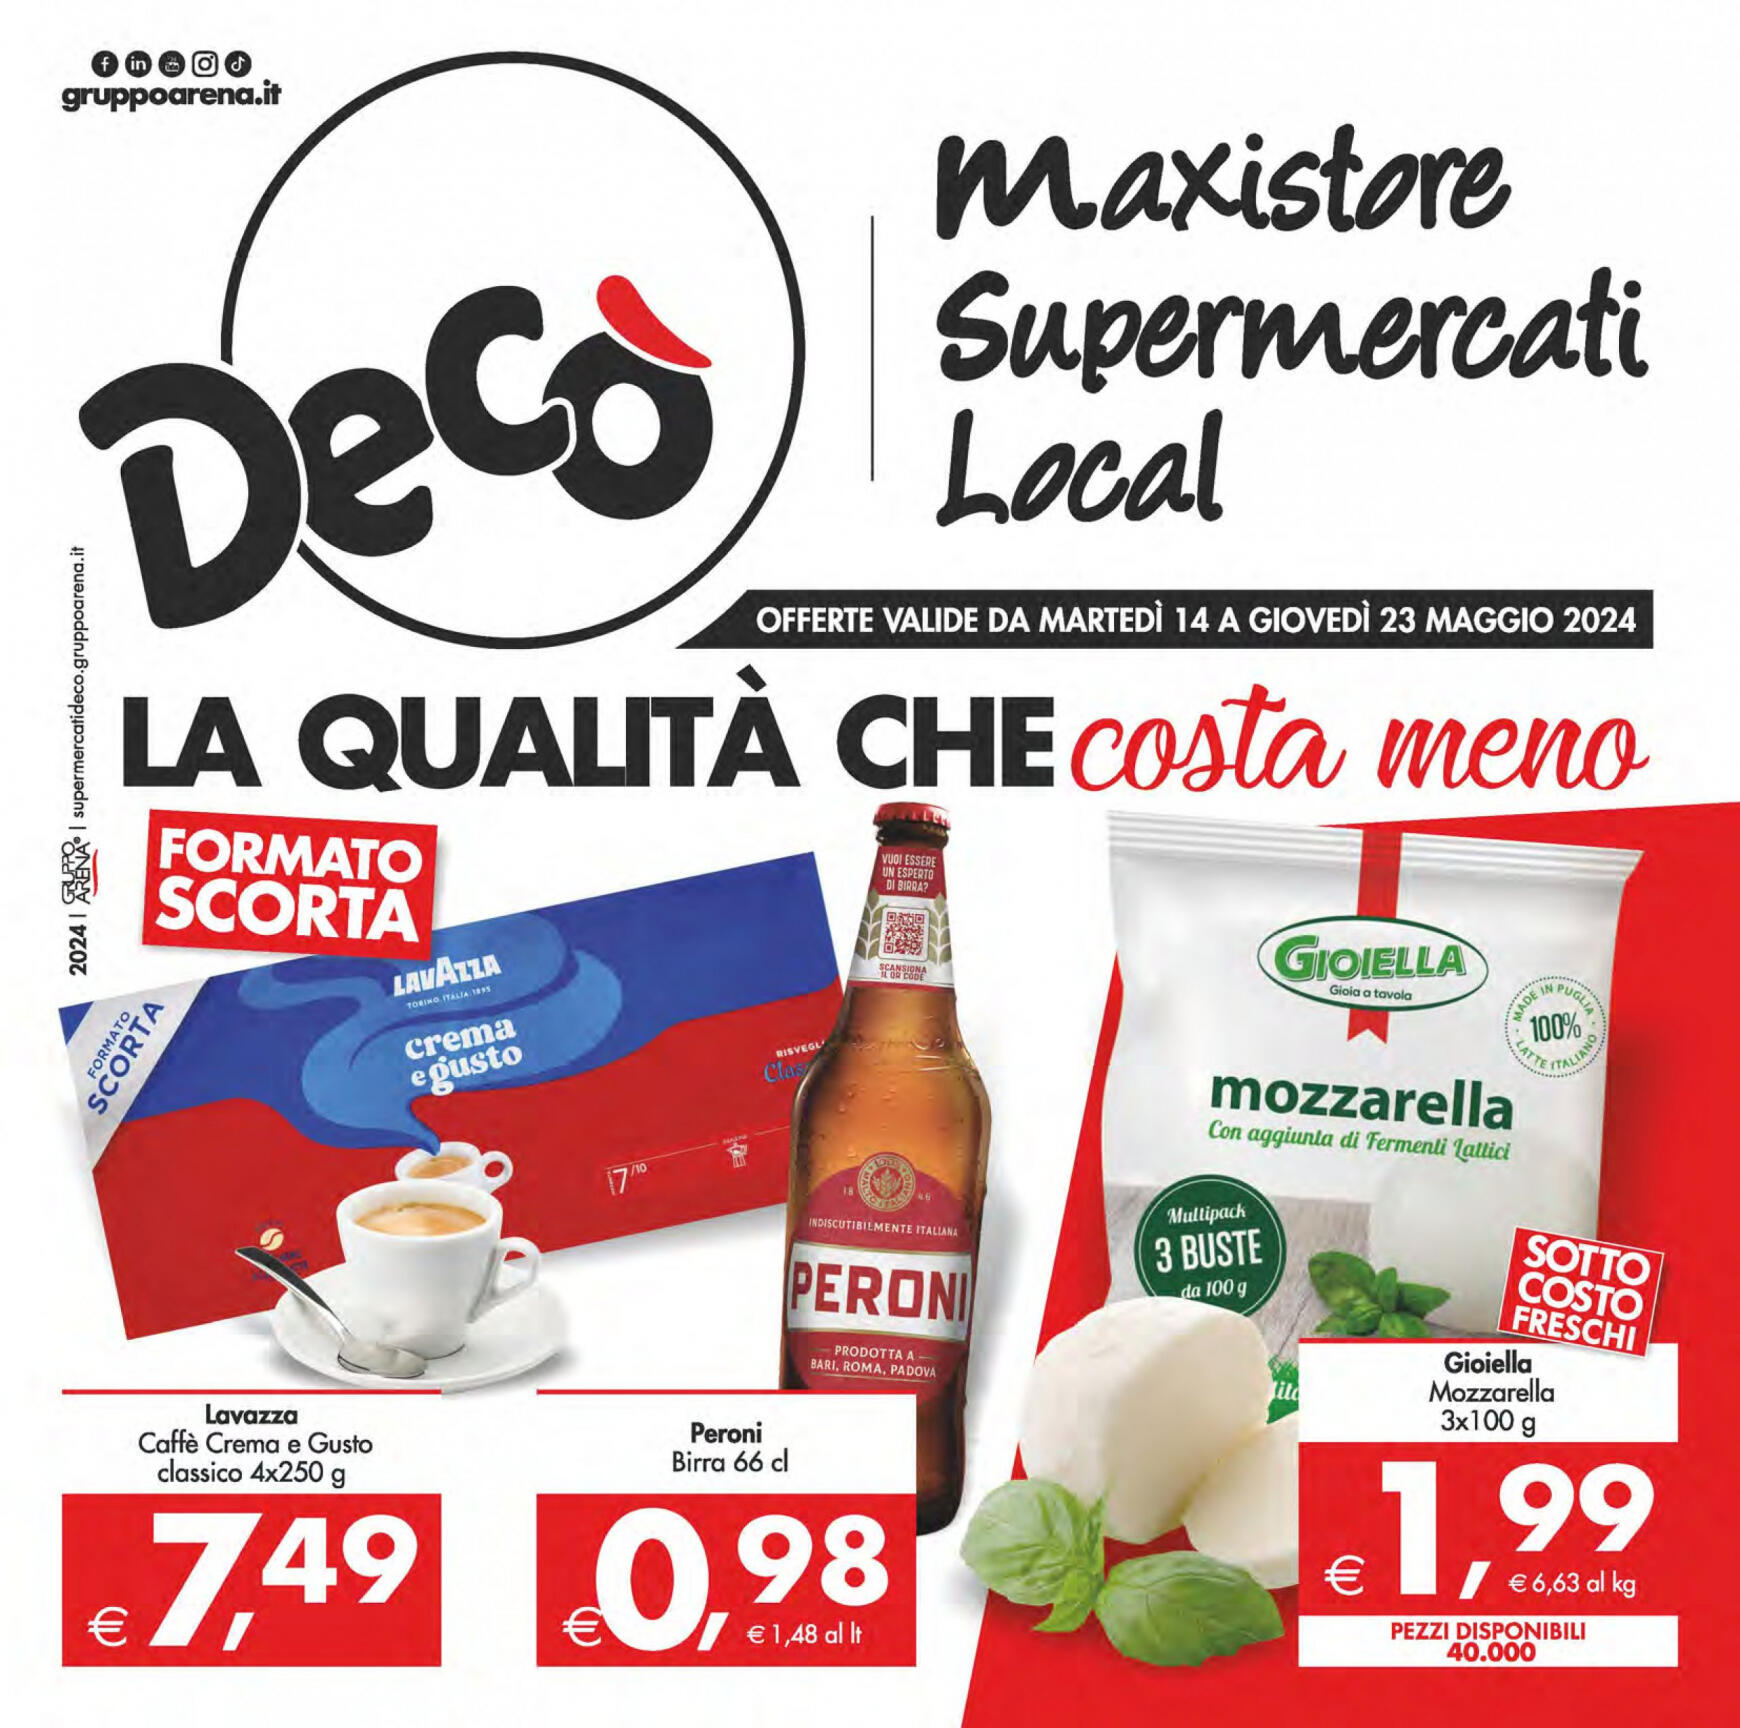 deco - Nuovo volantino Decò - Maxistore/Supermercati/Local 14.05. - 23.05. - page: 1